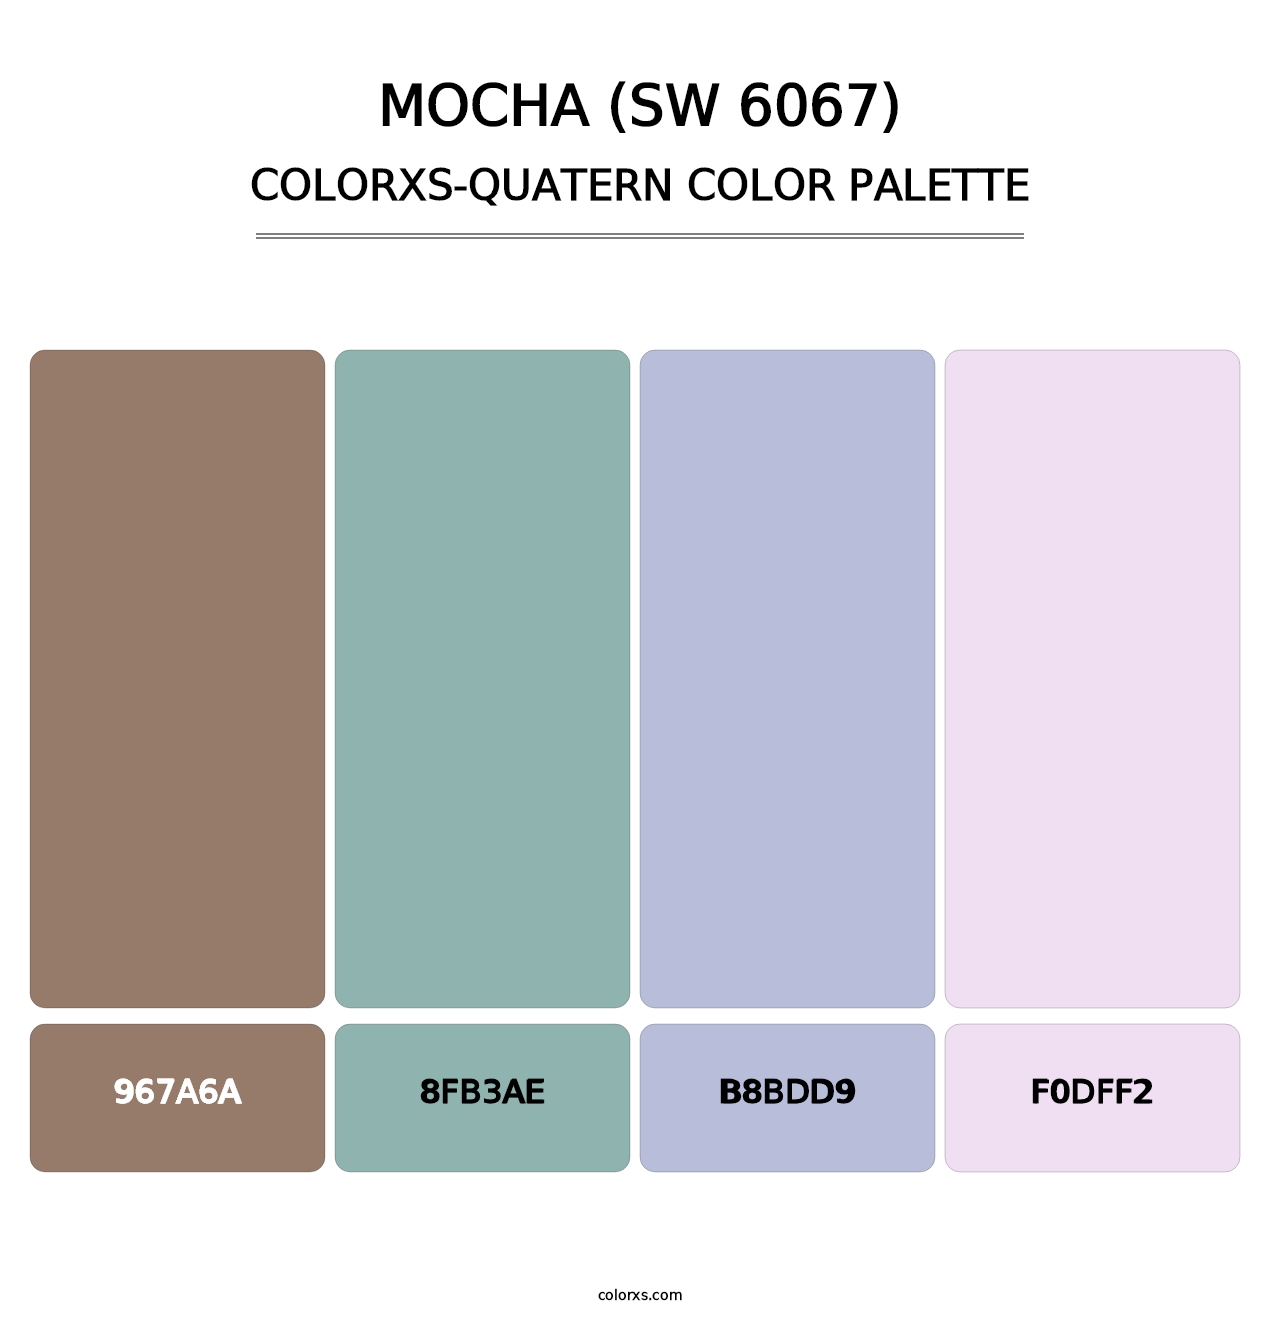 Mocha (SW 6067) - Colorxs Quatern Palette